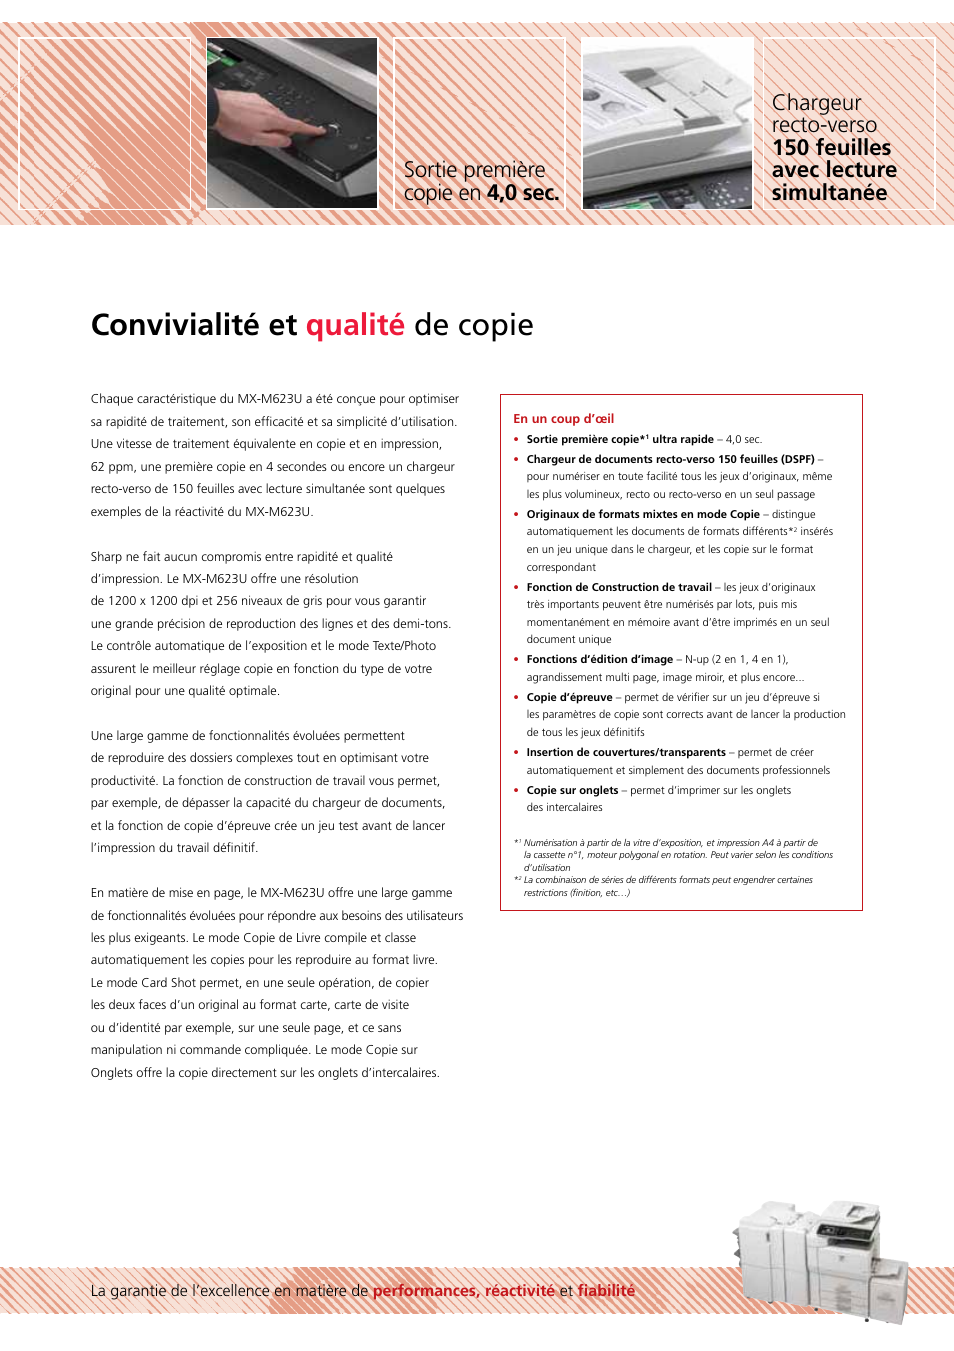 Convivialité et qualité de copie | Sharp MX-M623U Manuel d'utilisation | Page 5 / 12